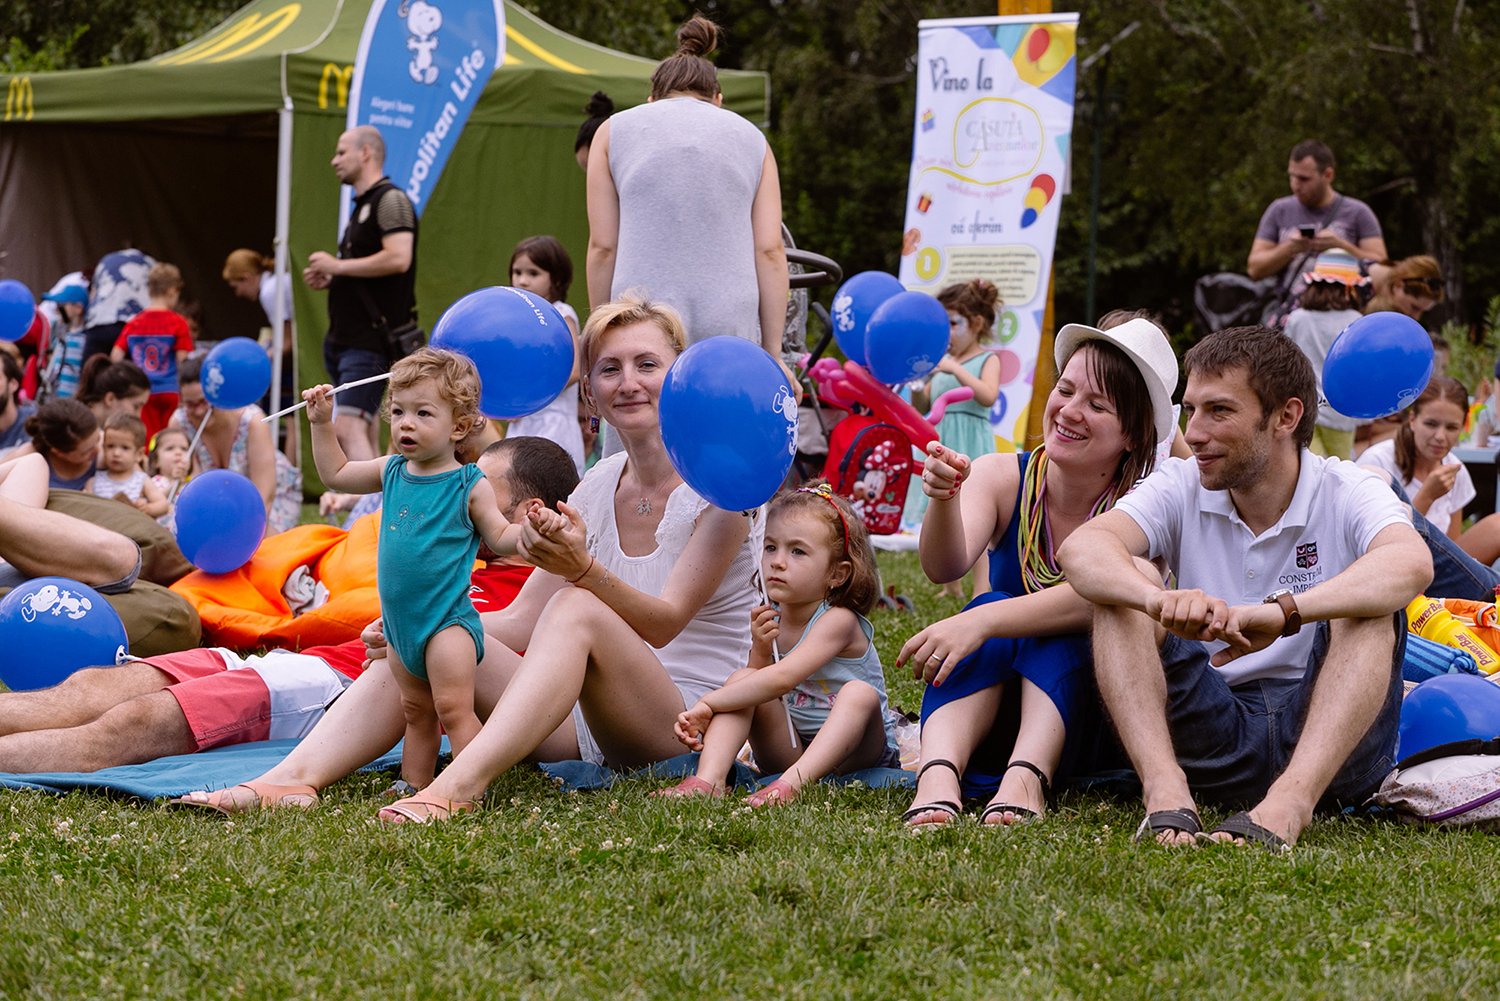 Peste 250 de familii au participat la picnicul organizat weekendul acesta în Parcul Herăstrău